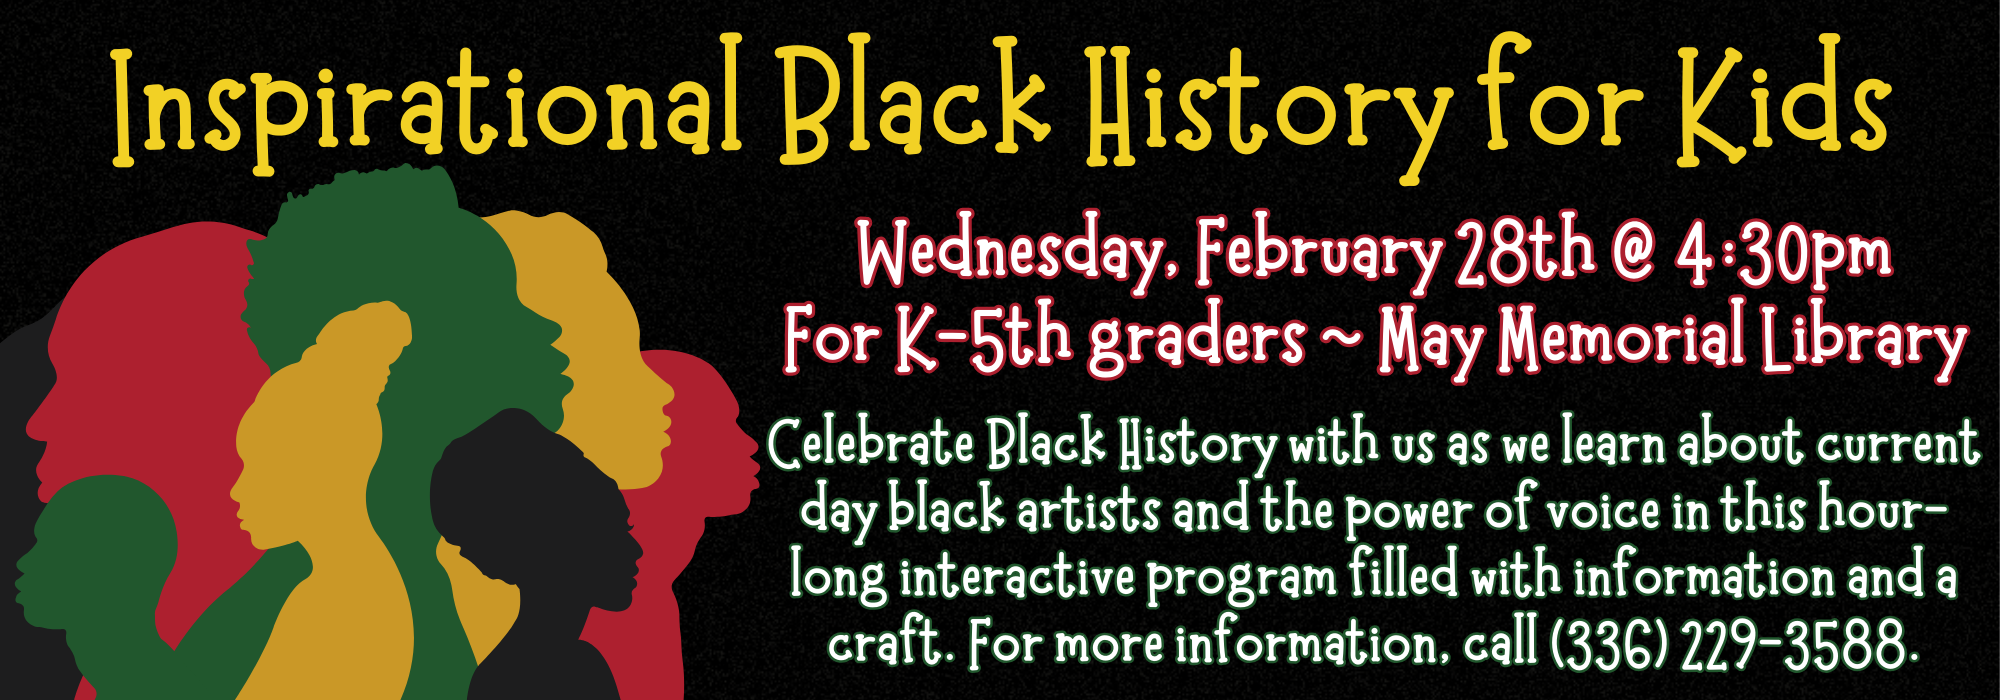 2.28 at 430 pm – Black History for Kids at May Memorial